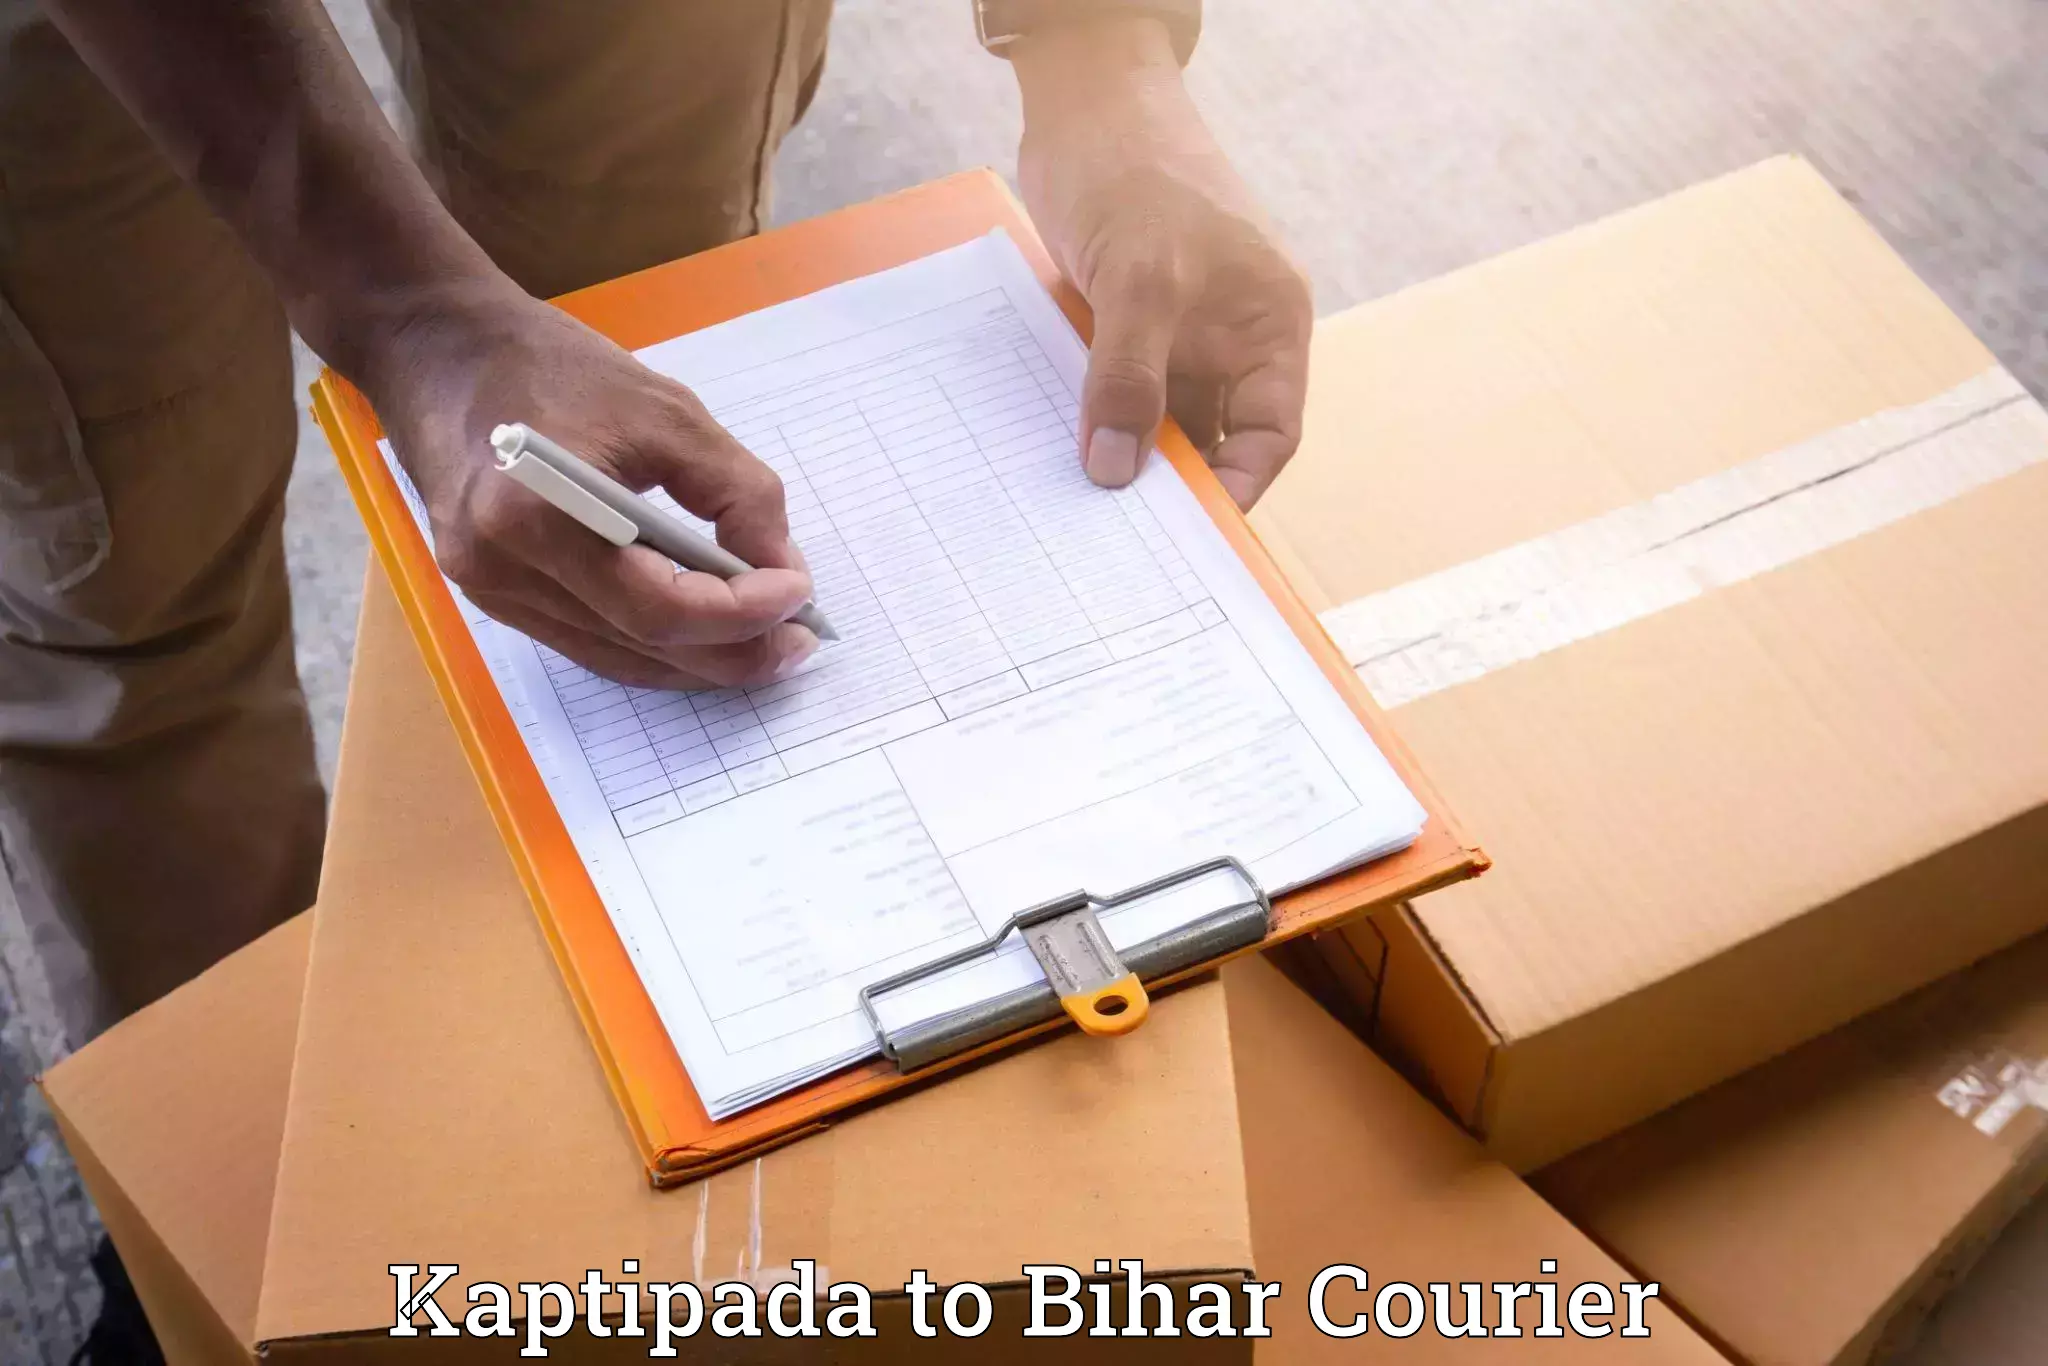 Trusted furniture movers in Kaptipada to Biraul